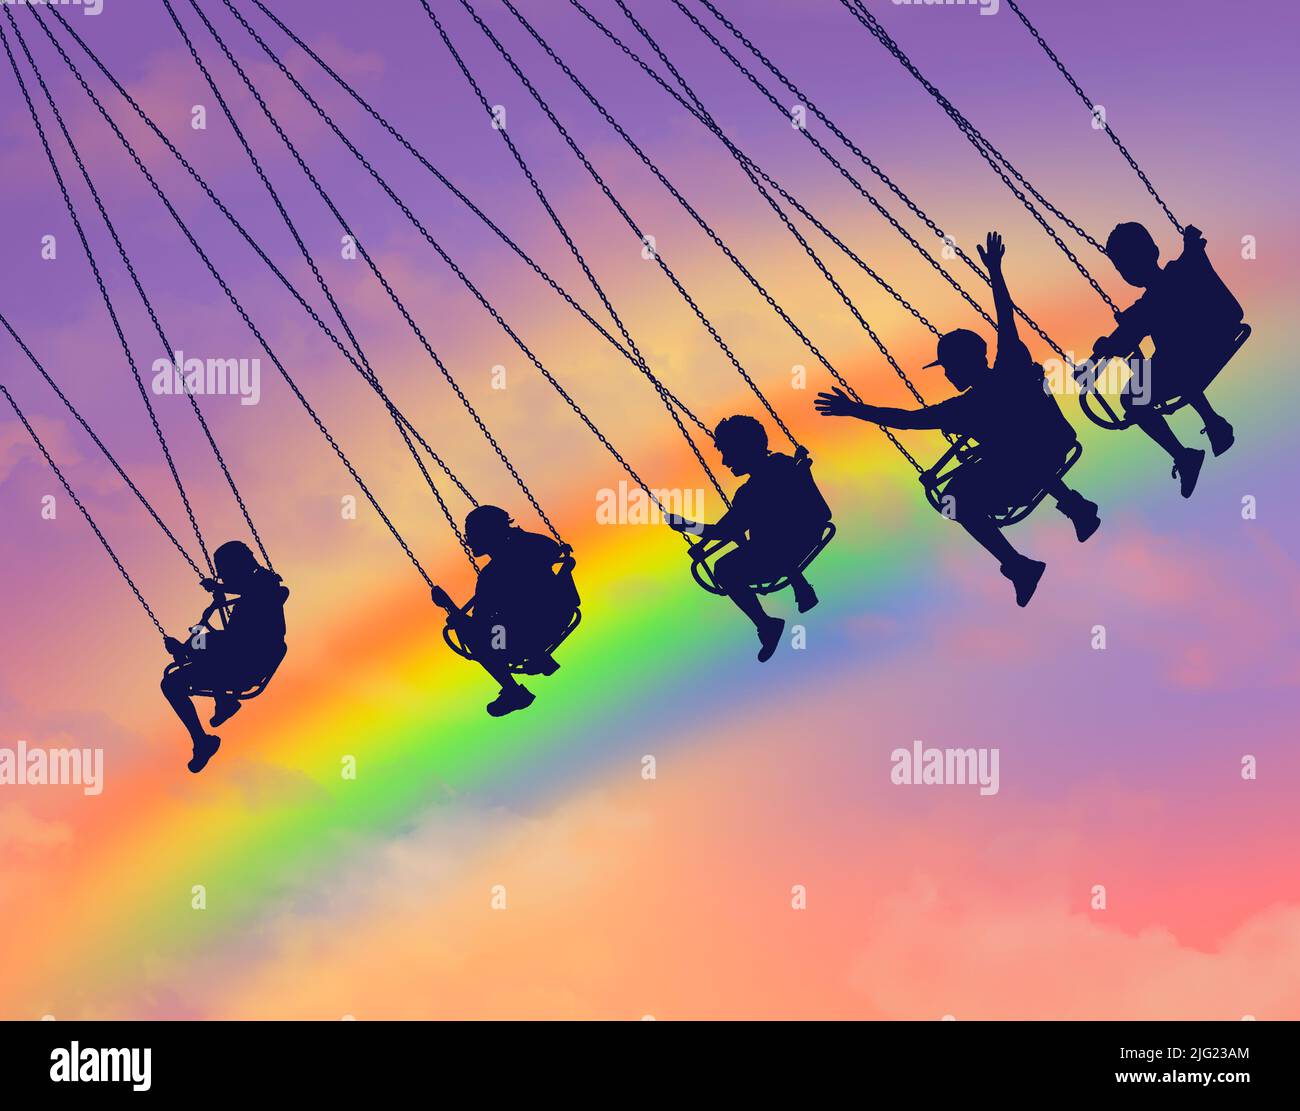 Los jóvenes son vistos montando un columpio de silla de carsouel con un arco iris colorido en el cielo como el fondo en esta ilustración de 3. Foto de stock